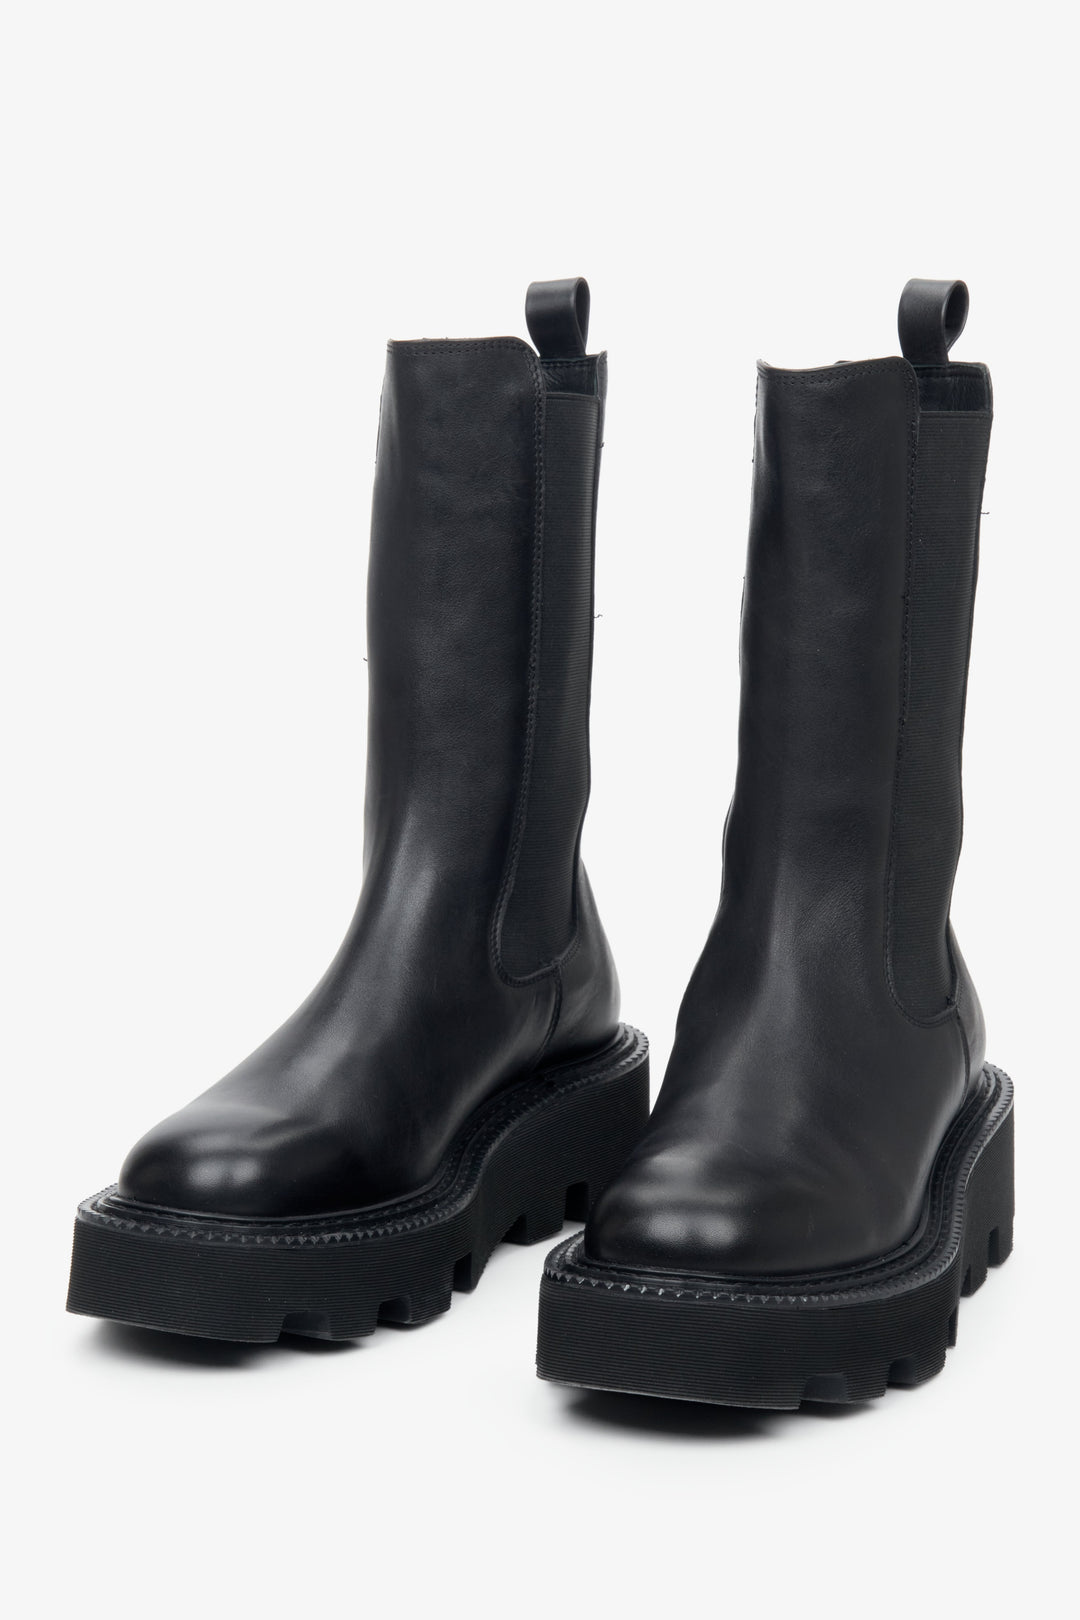 Wysokie sztyblety damskie w kolorze czarnym ze skóry naturalnej marki Estro - zbliżenie na przednią część buta.